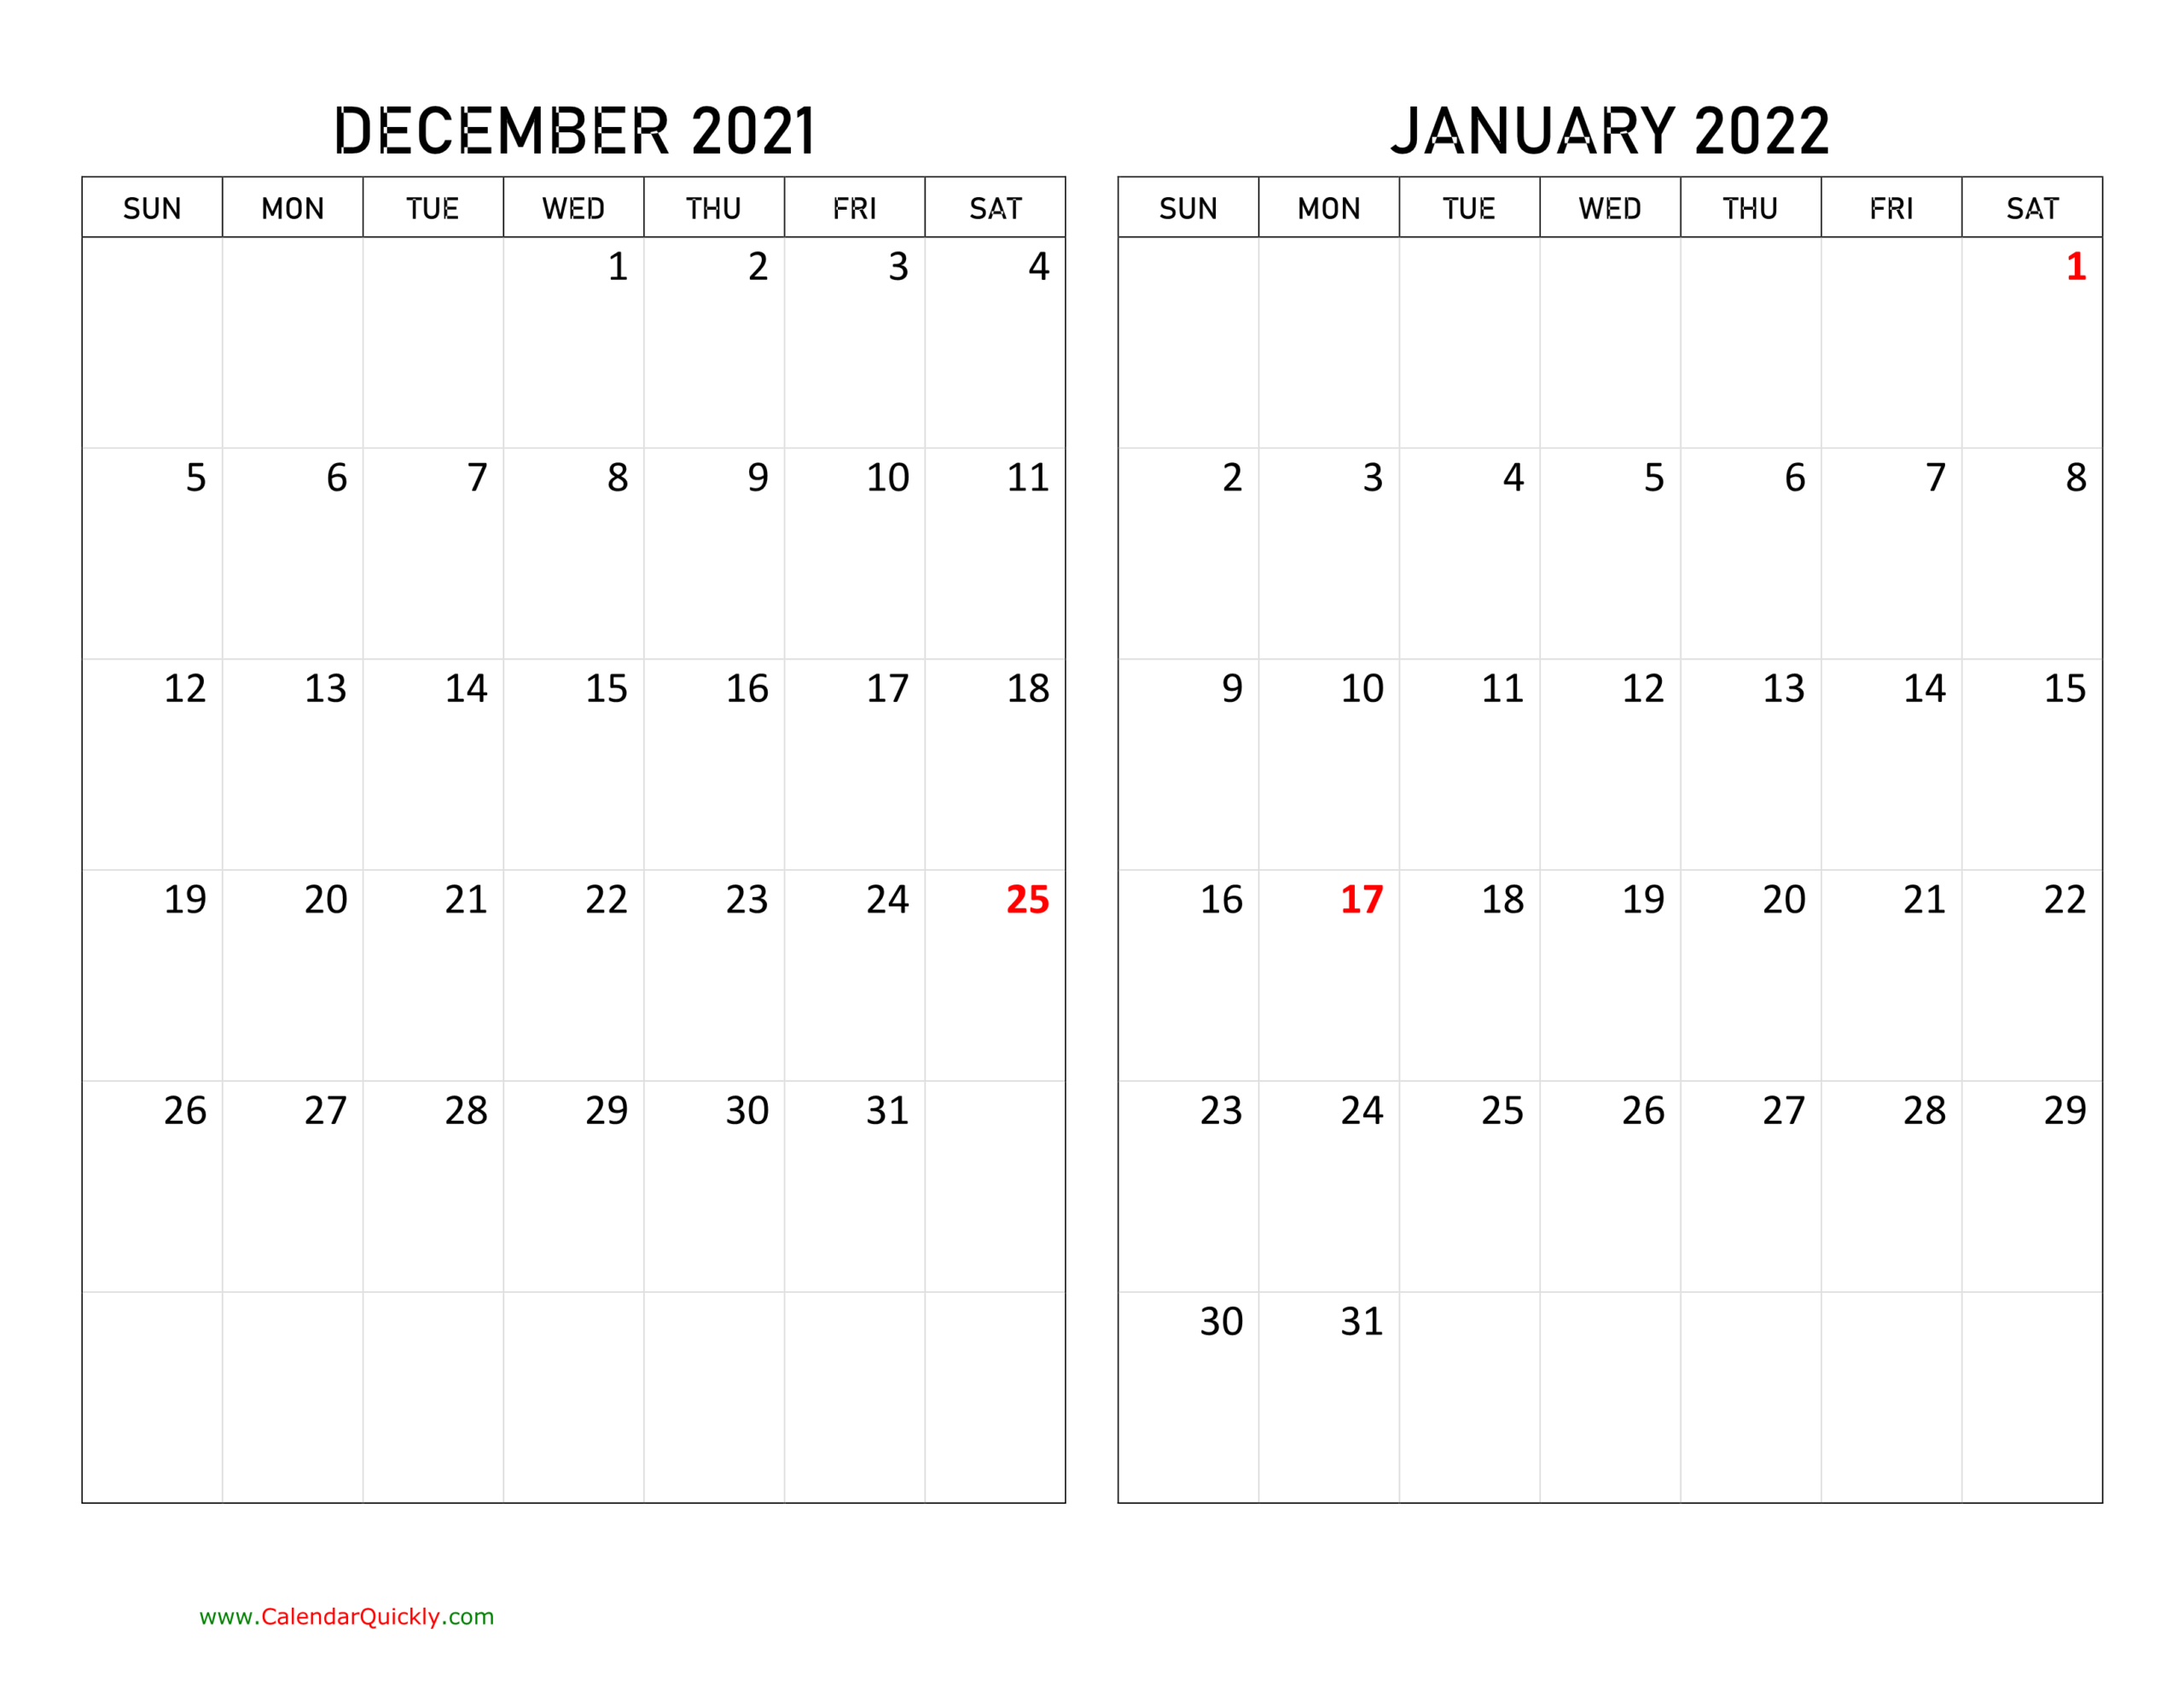 Get February 11 2022 Calendar